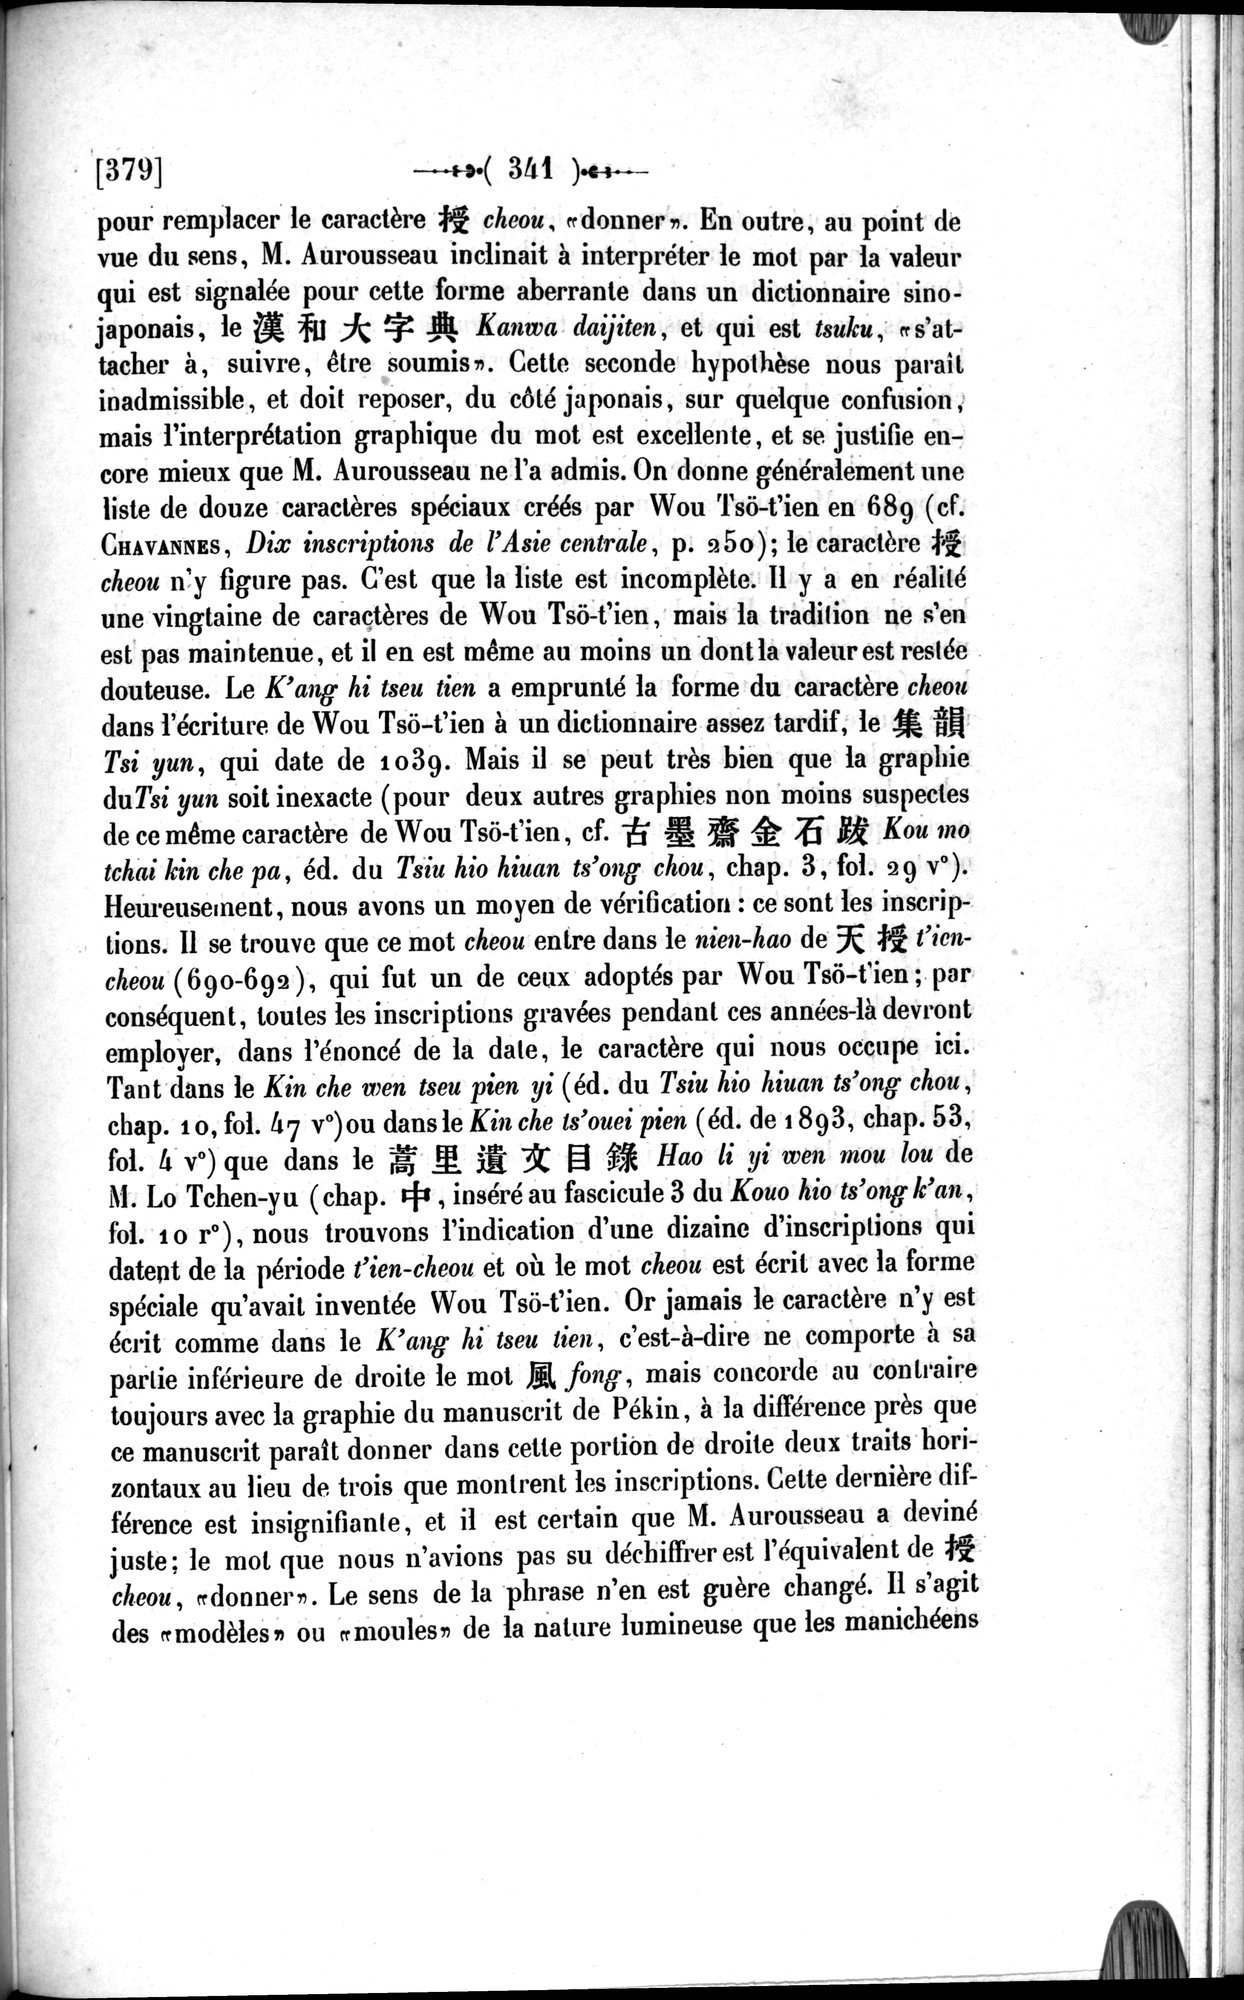 Un traité manichéen retrouvé en Chine : vol.1 / Page 351 (Grayscale High Resolution Image)